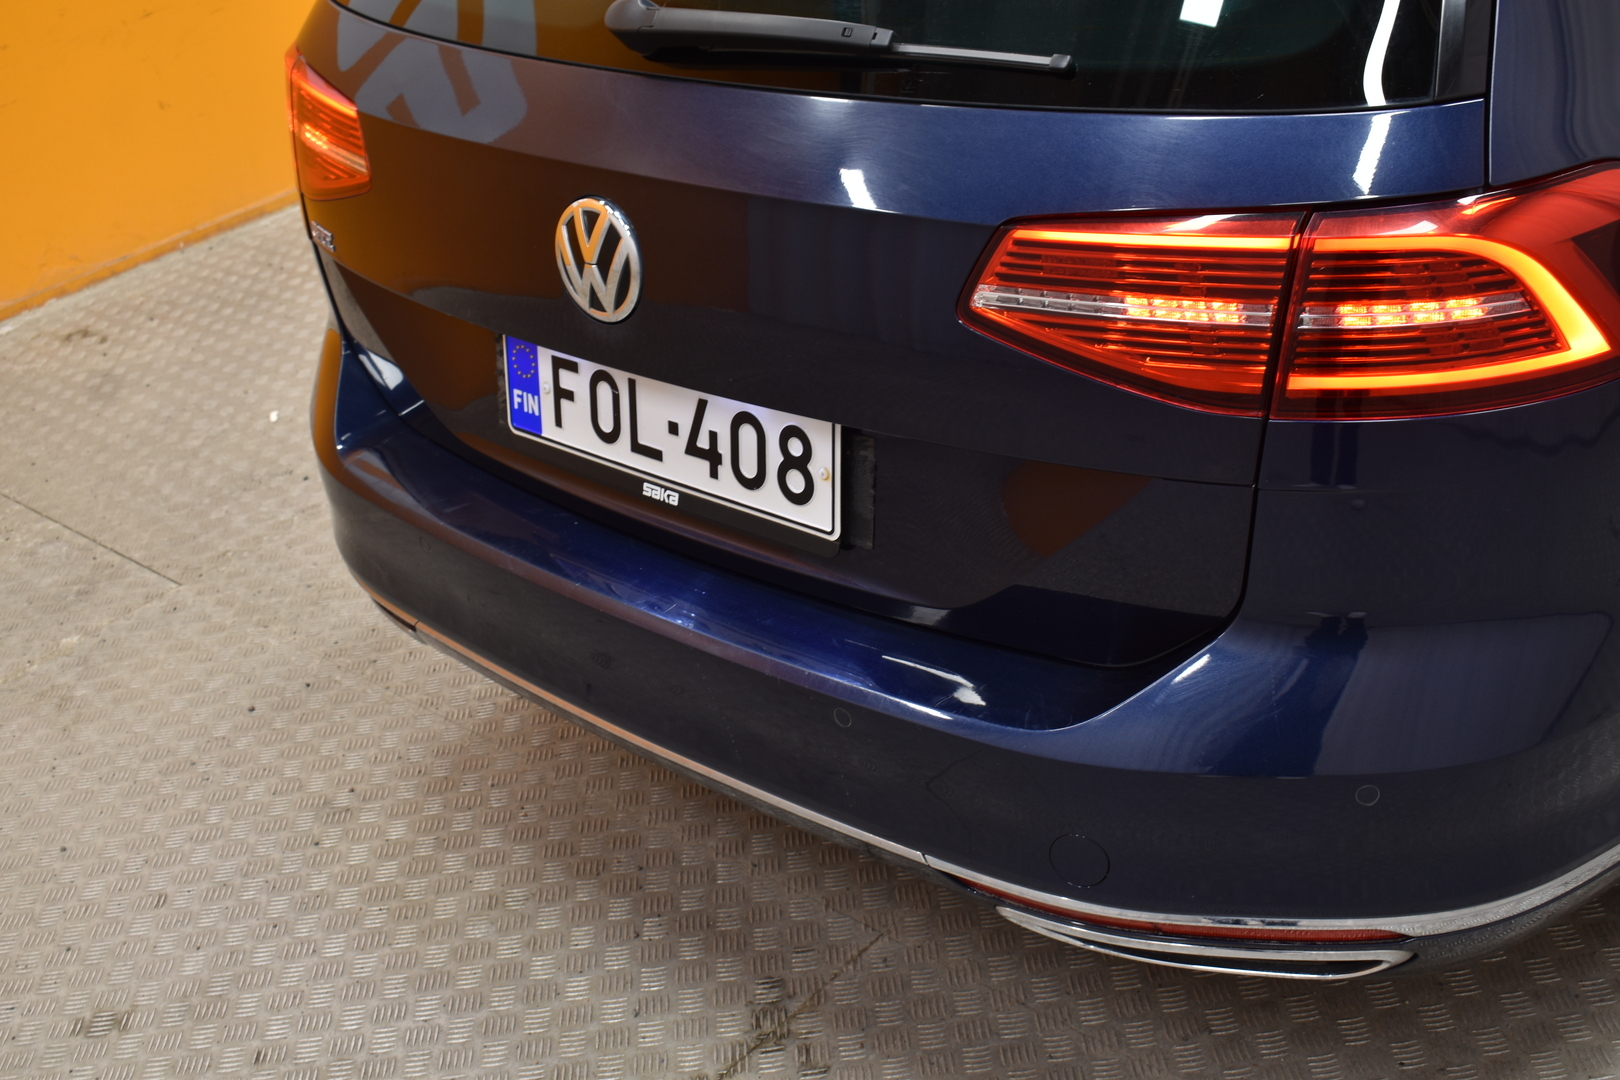 Sininen Farmari, Volkswagen Passat – FOL-408